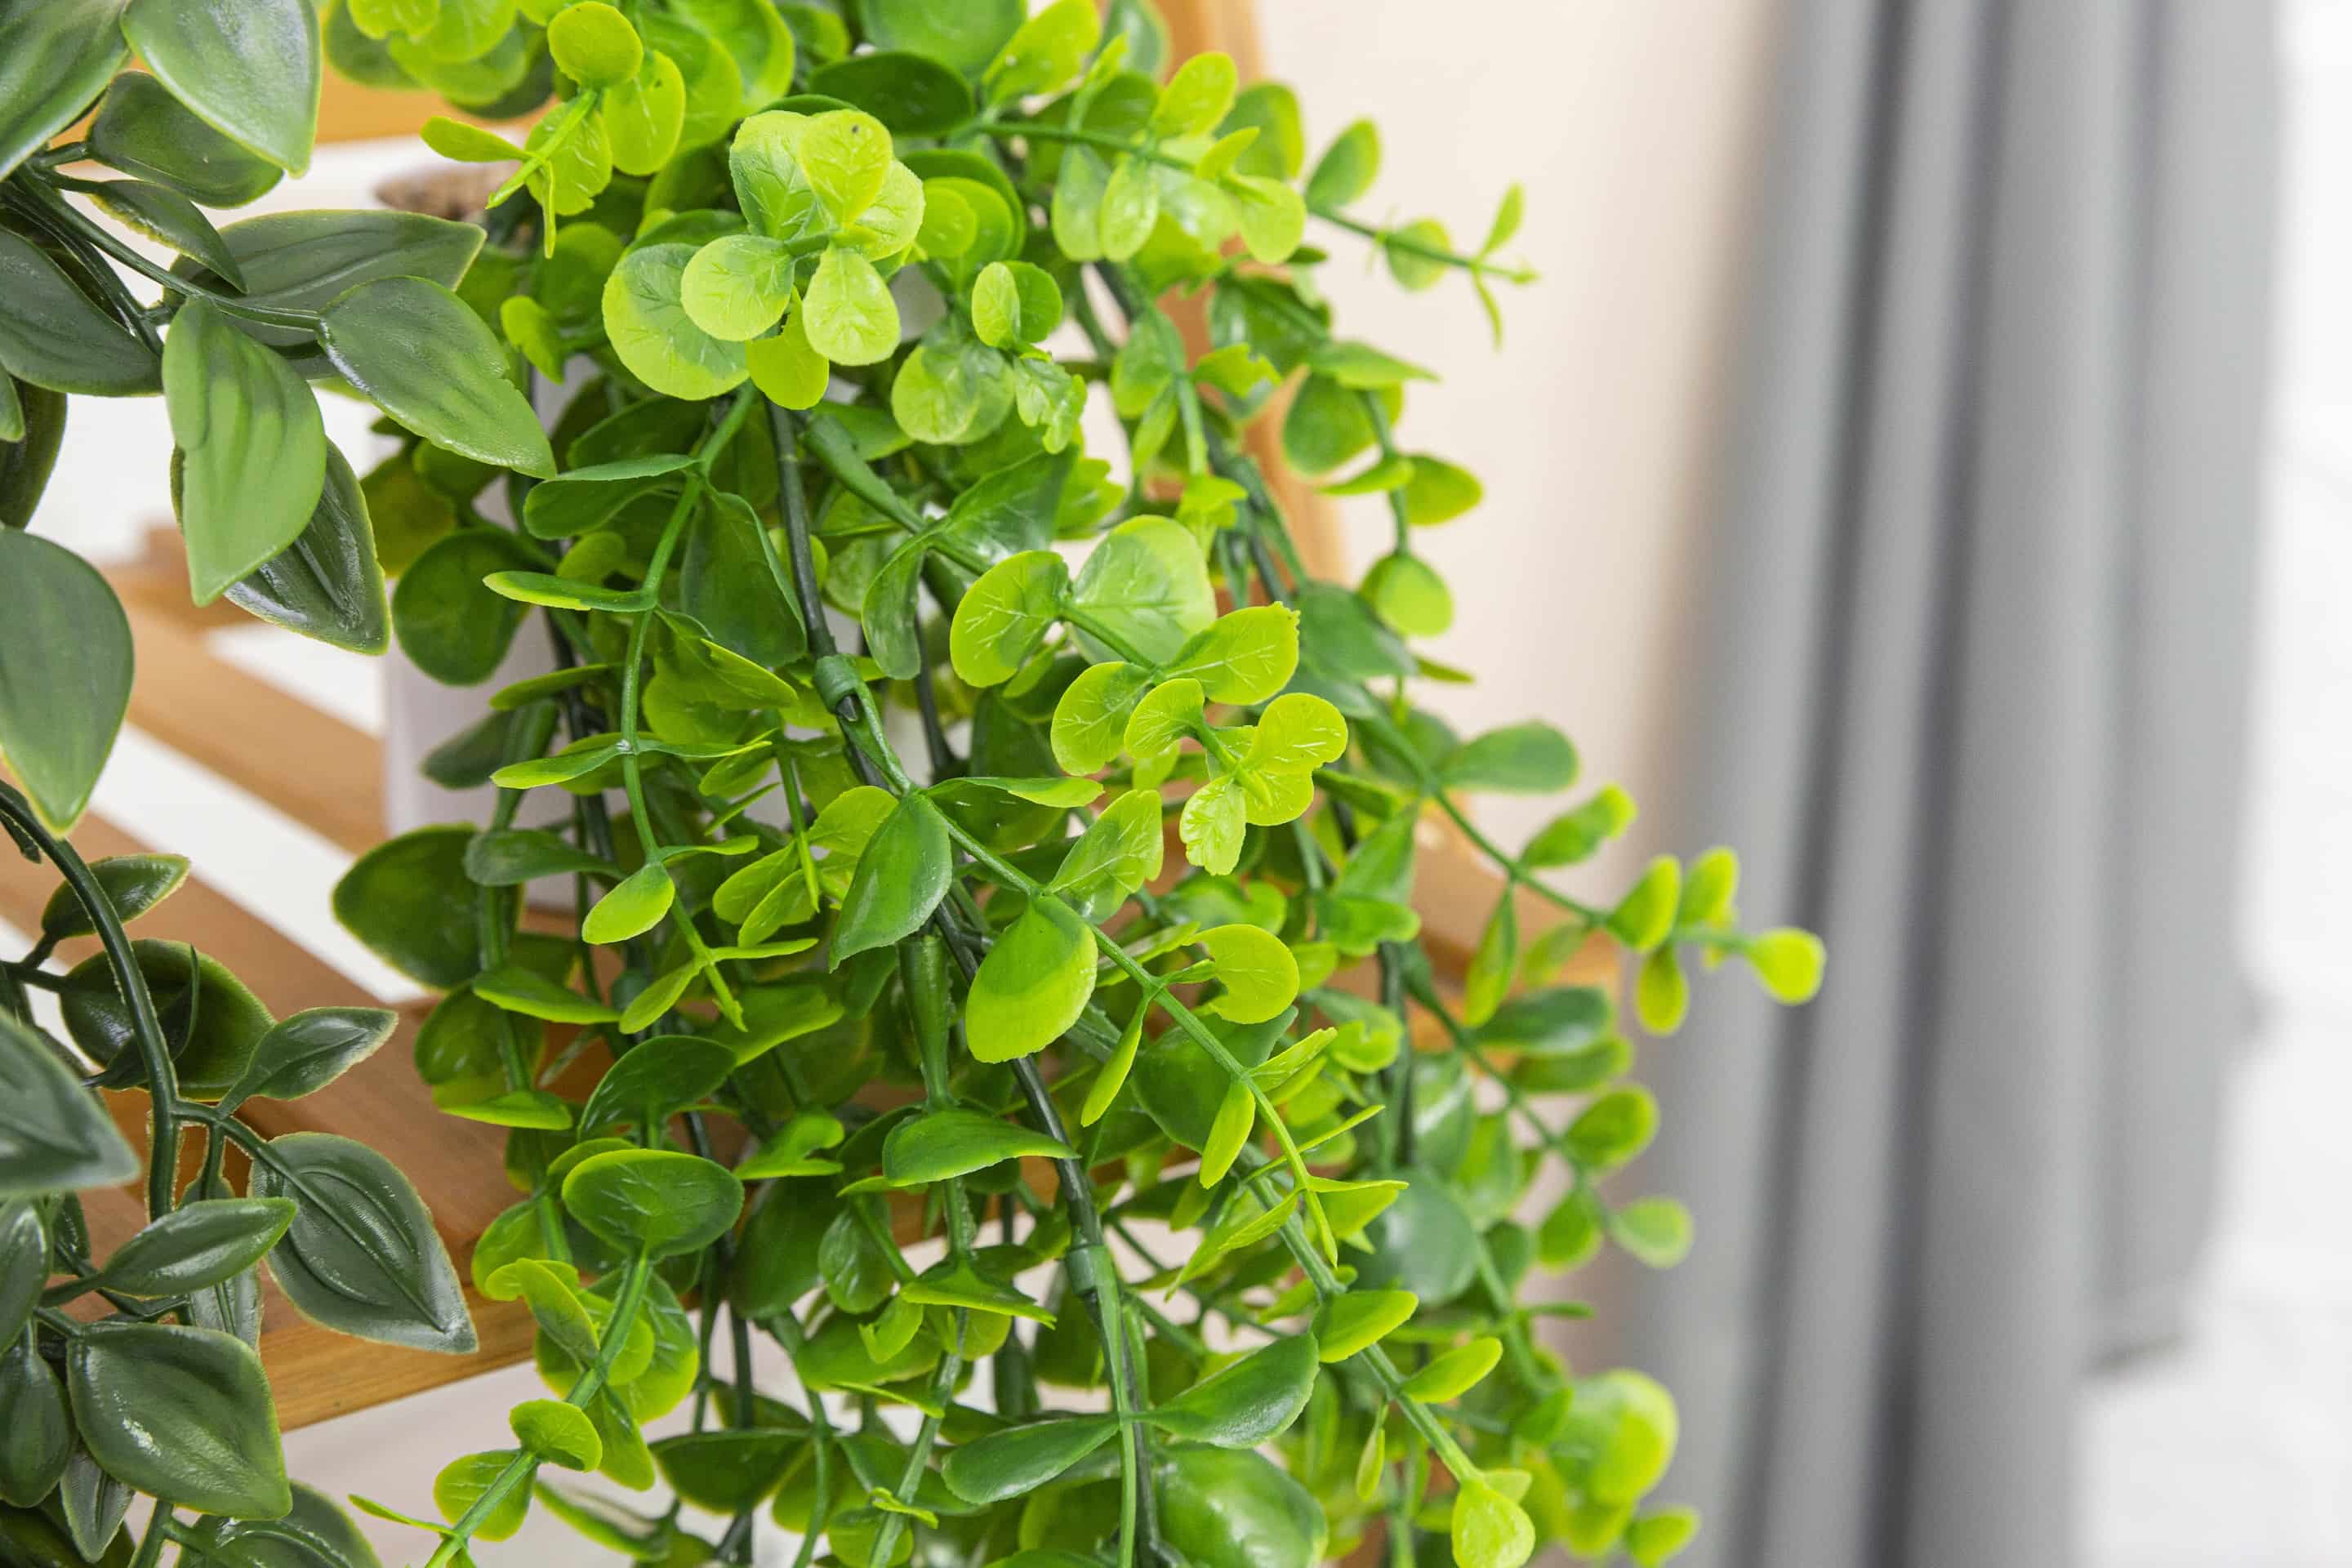 GreenDream® 3 Verschillende Hangplanten Kunstplanten in Pot - decoratief - Cadeautip - Groen